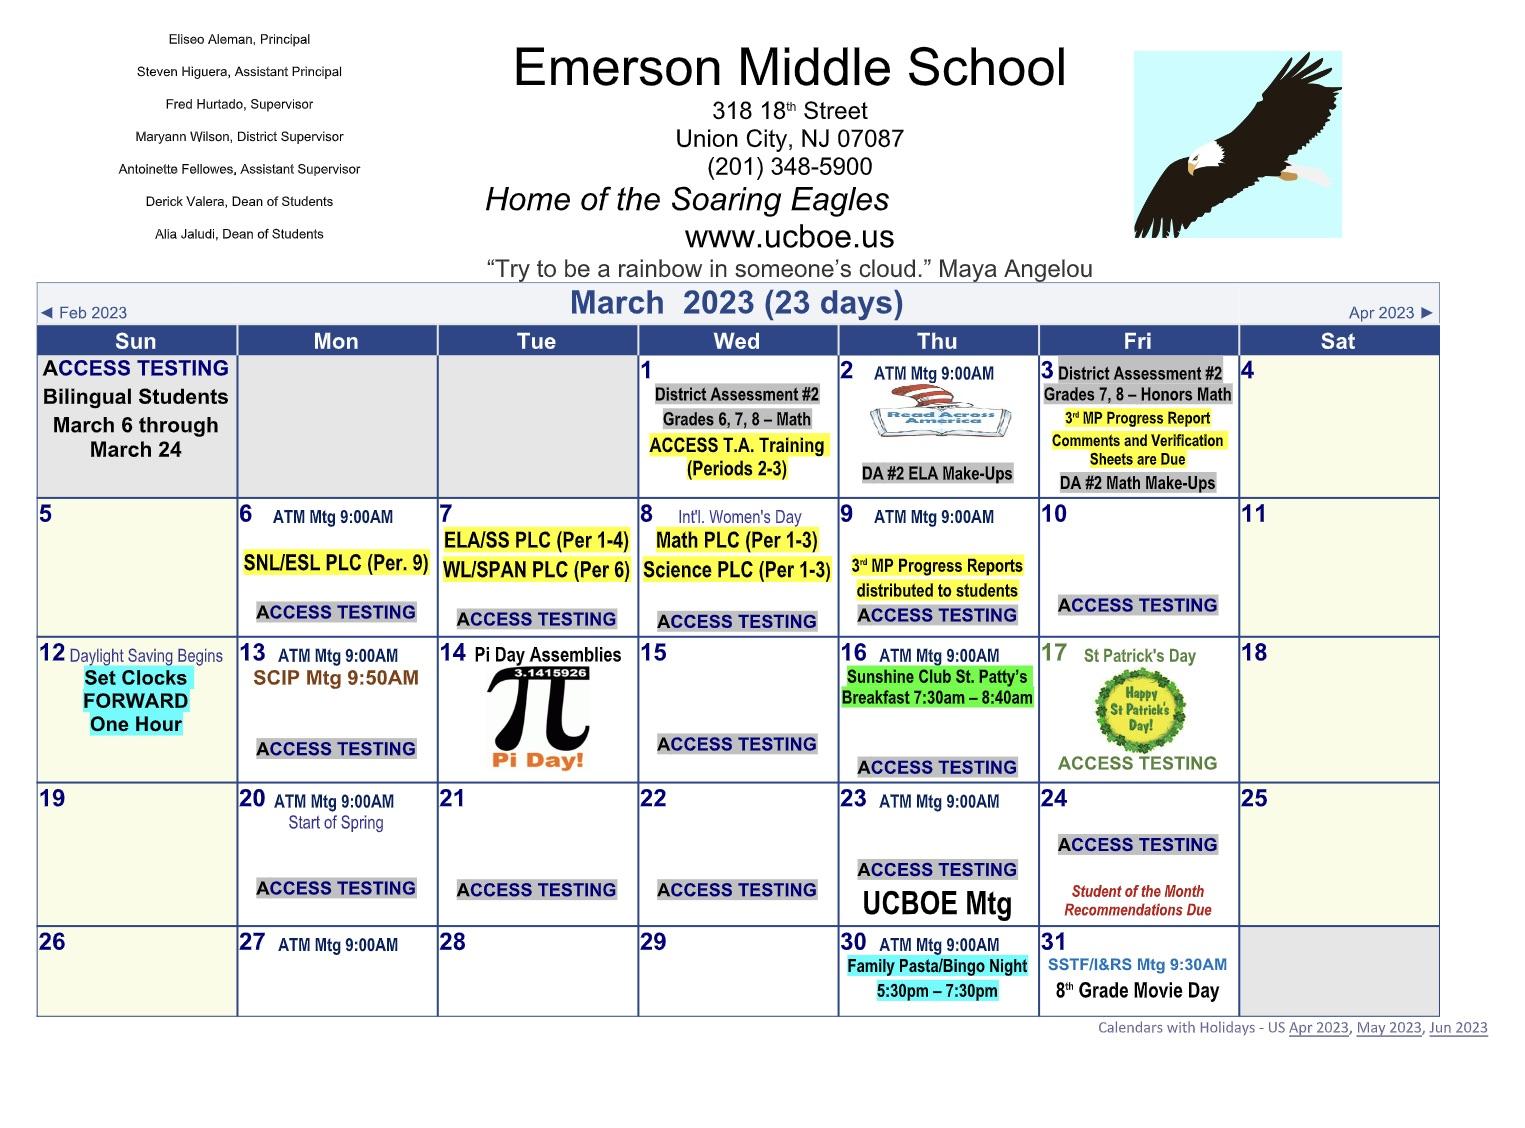 March 2023 Calendar-Emerson Middle School